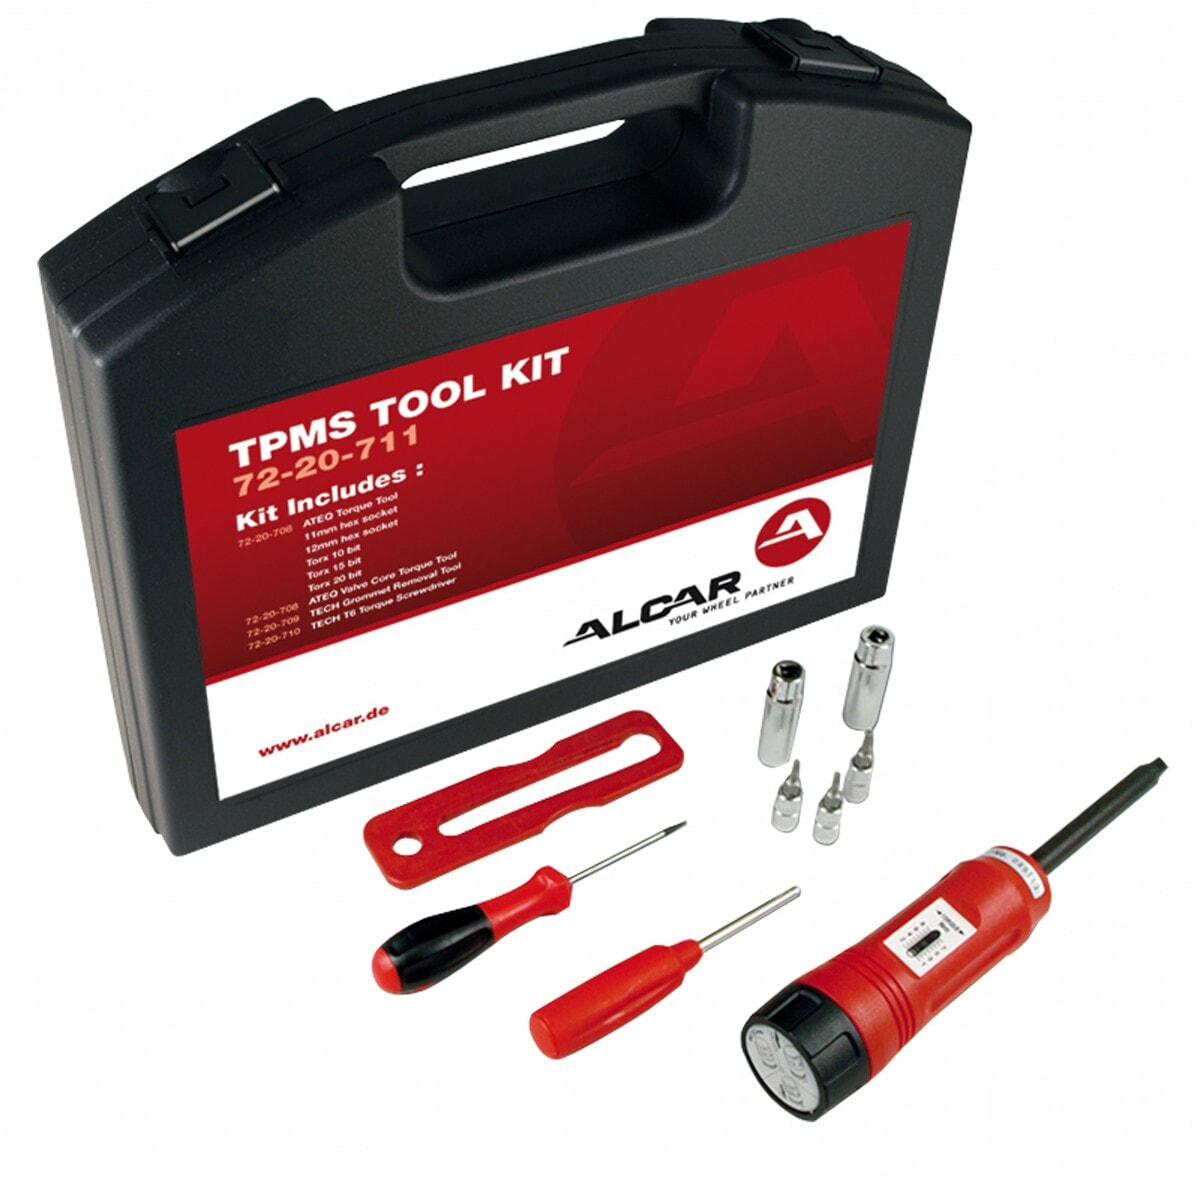 RDKS-Zubehör Alcar TPMS Tool Kit Montageset SKA001